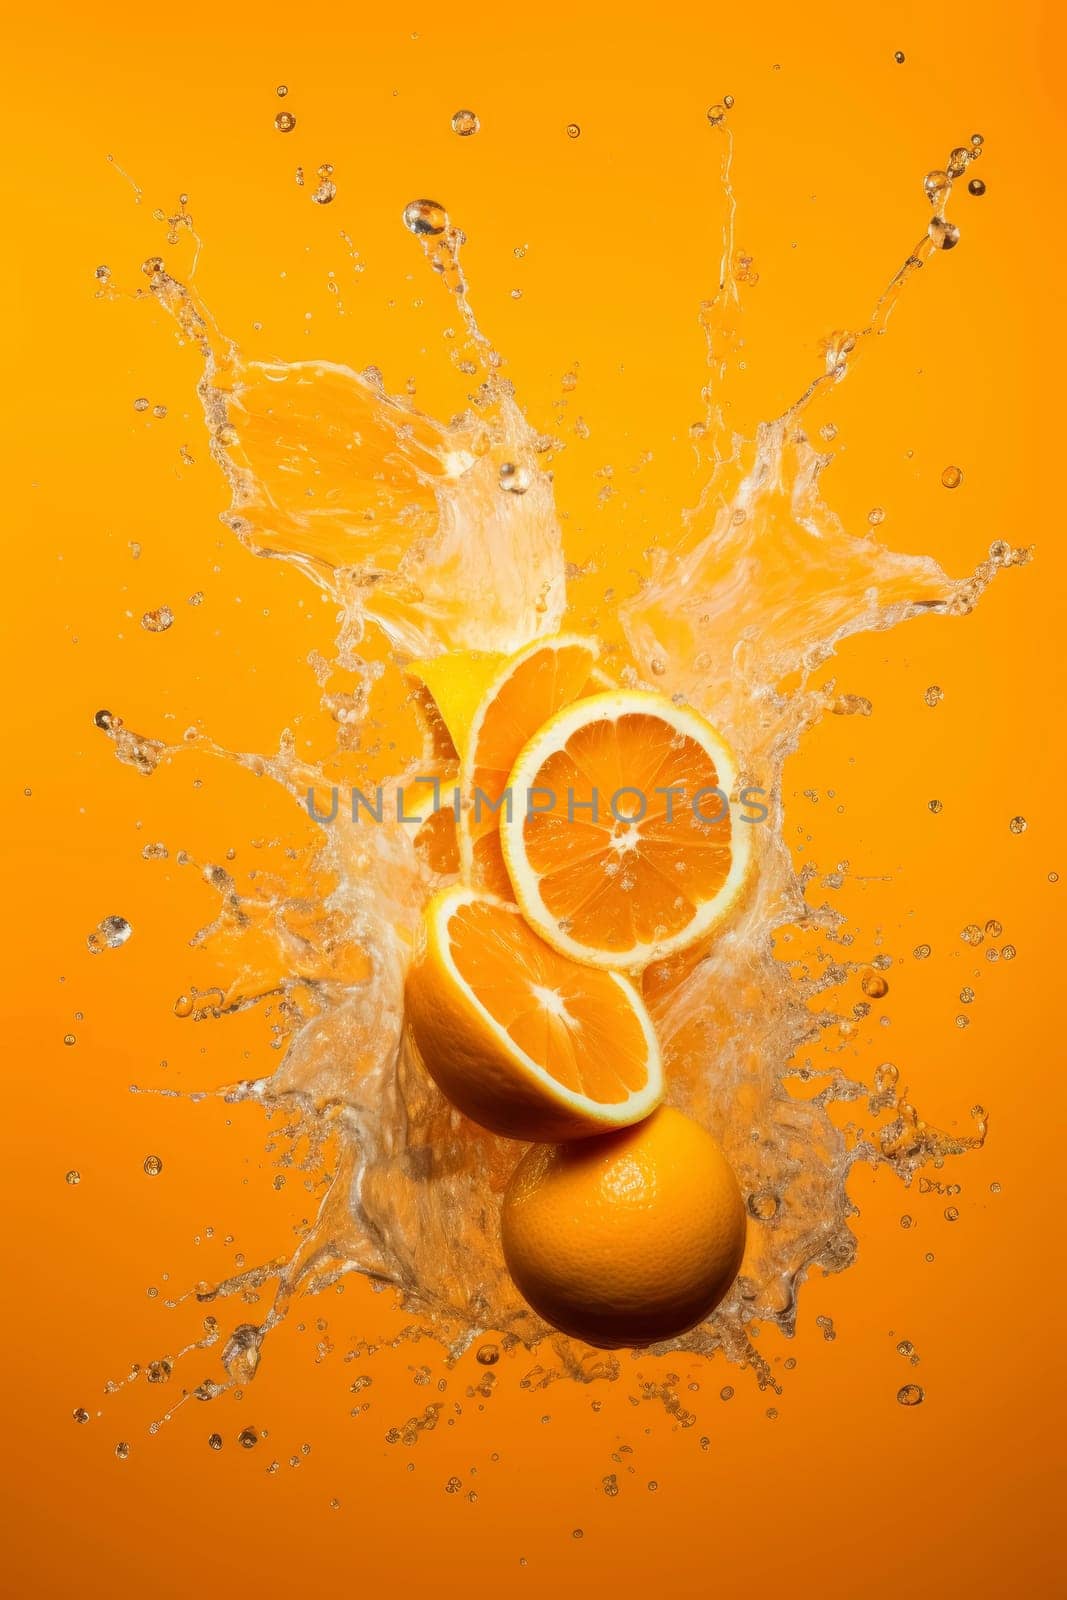 Fresh Orange Halves in Splash on Orange Background by andreyz